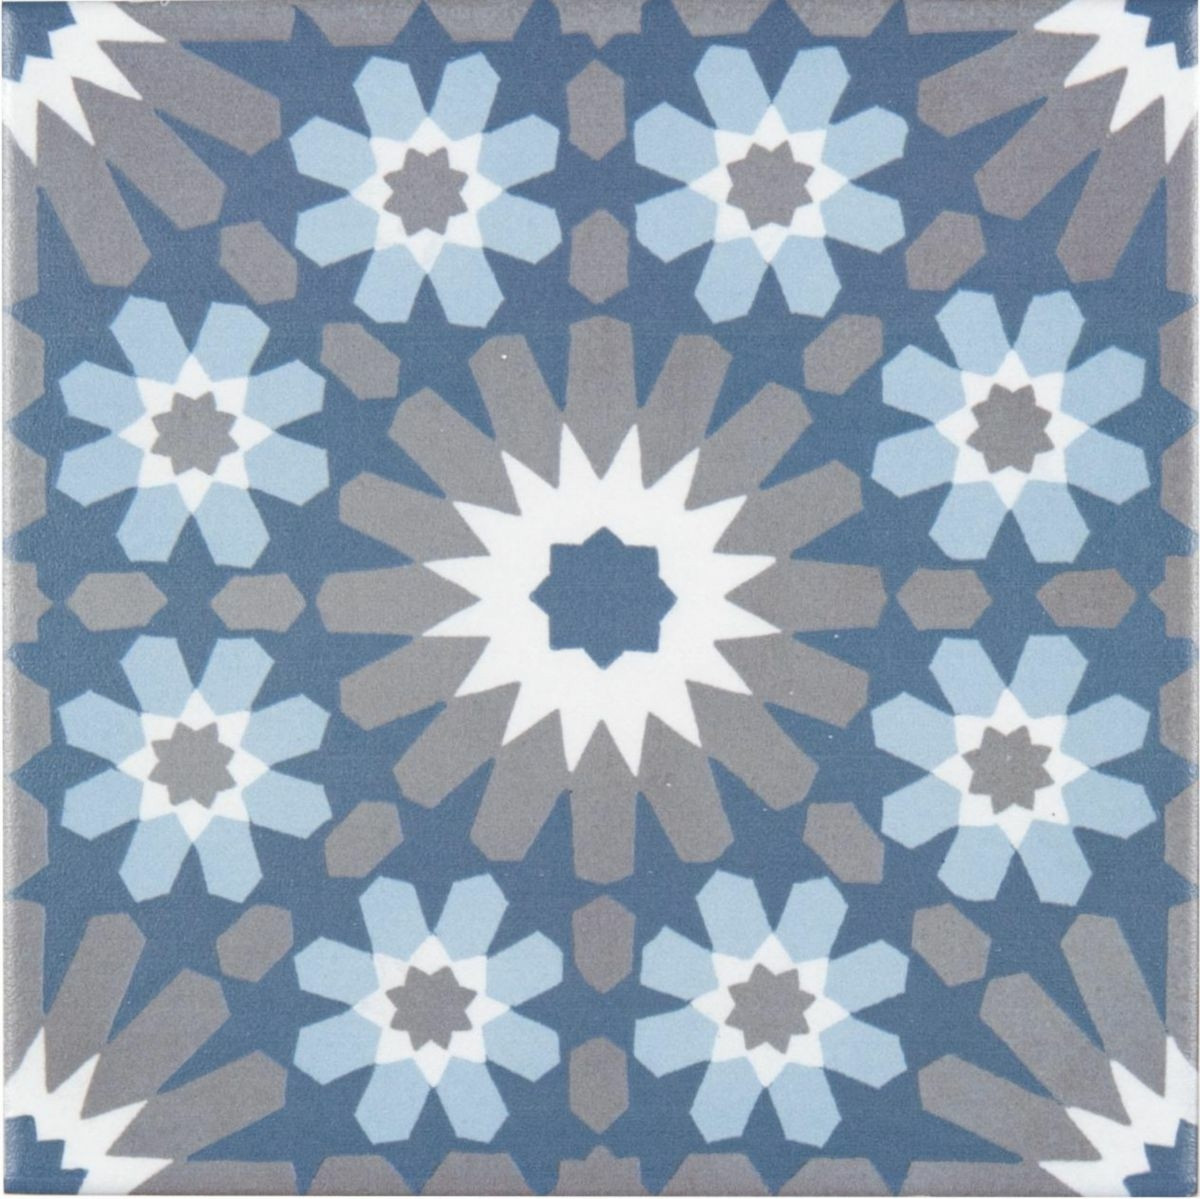 Carreau ceramique décor classique rosace bleu gris blanc cassé 11 mm 20 x 20 cm - Réf.CEMI34